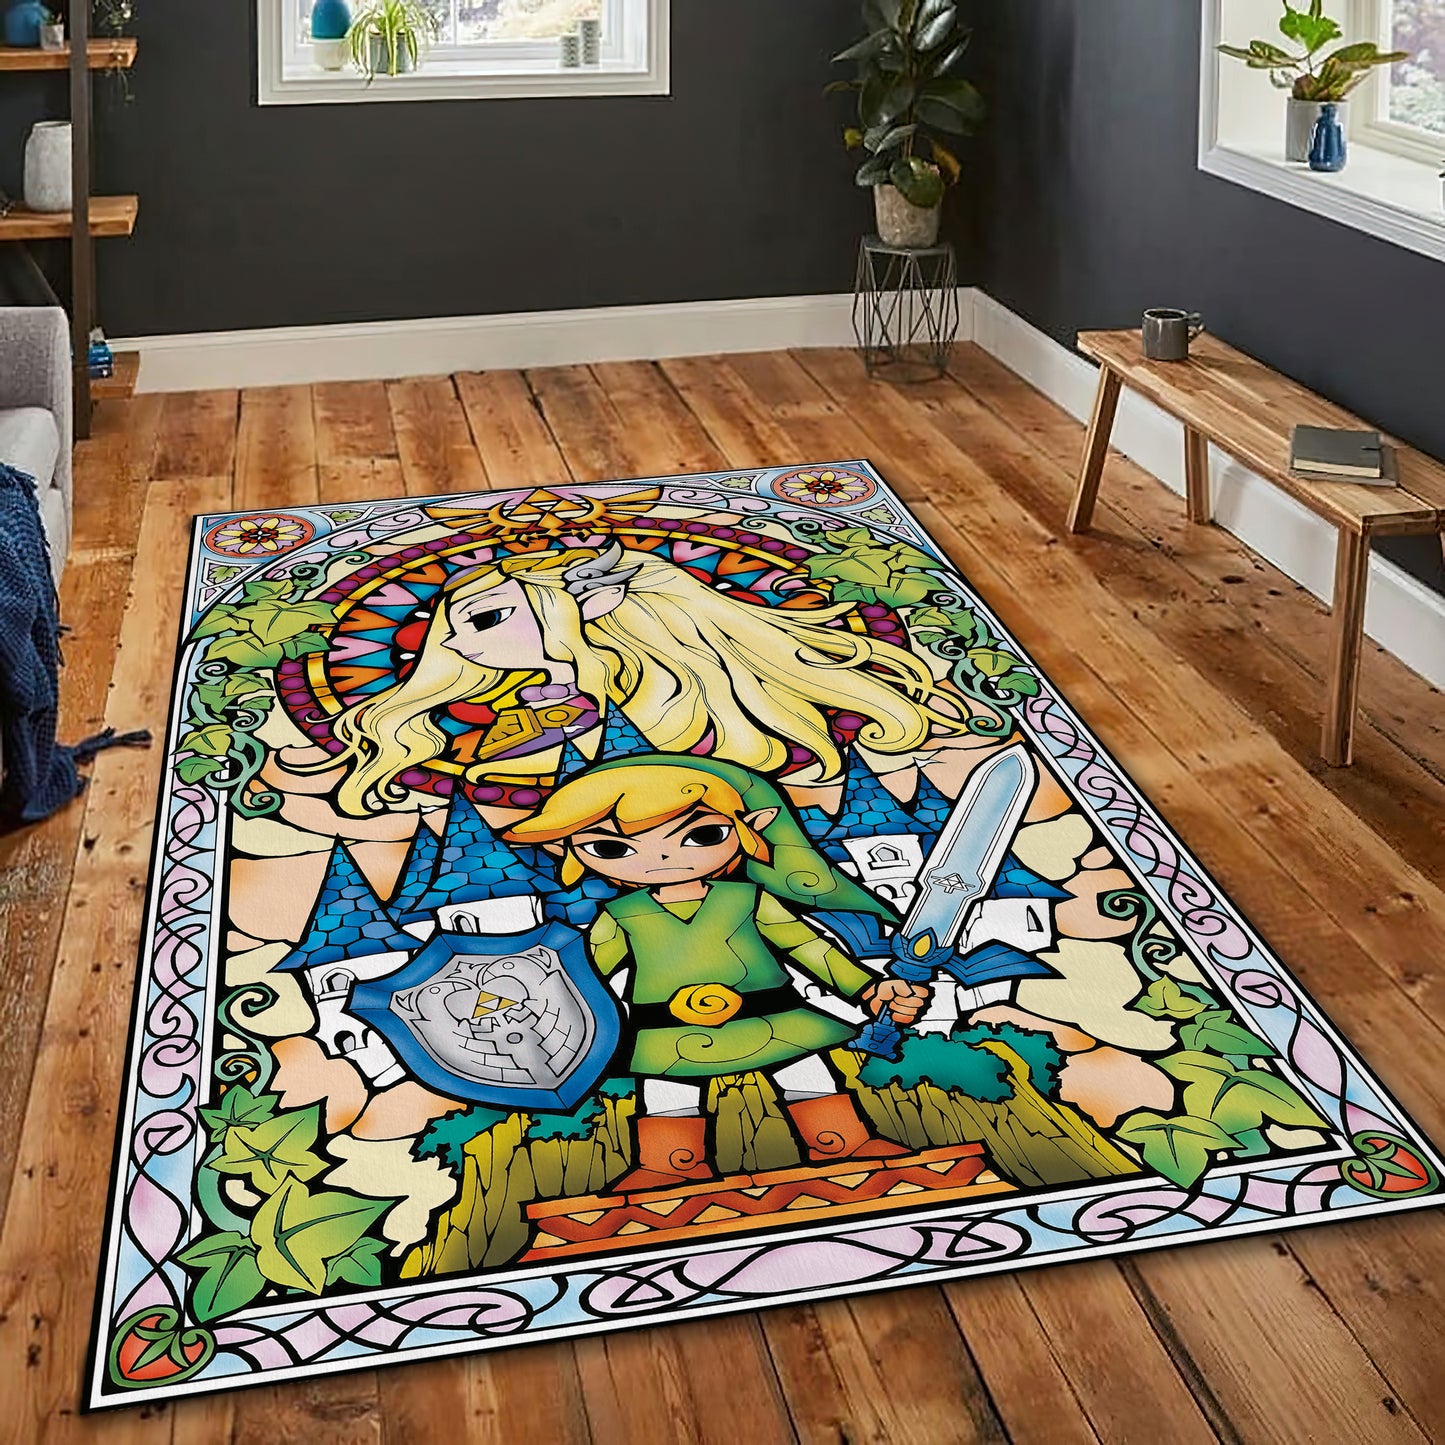 Zelda Character Rug - Colorful Carpet for Game Decor and Zelda Art Mat